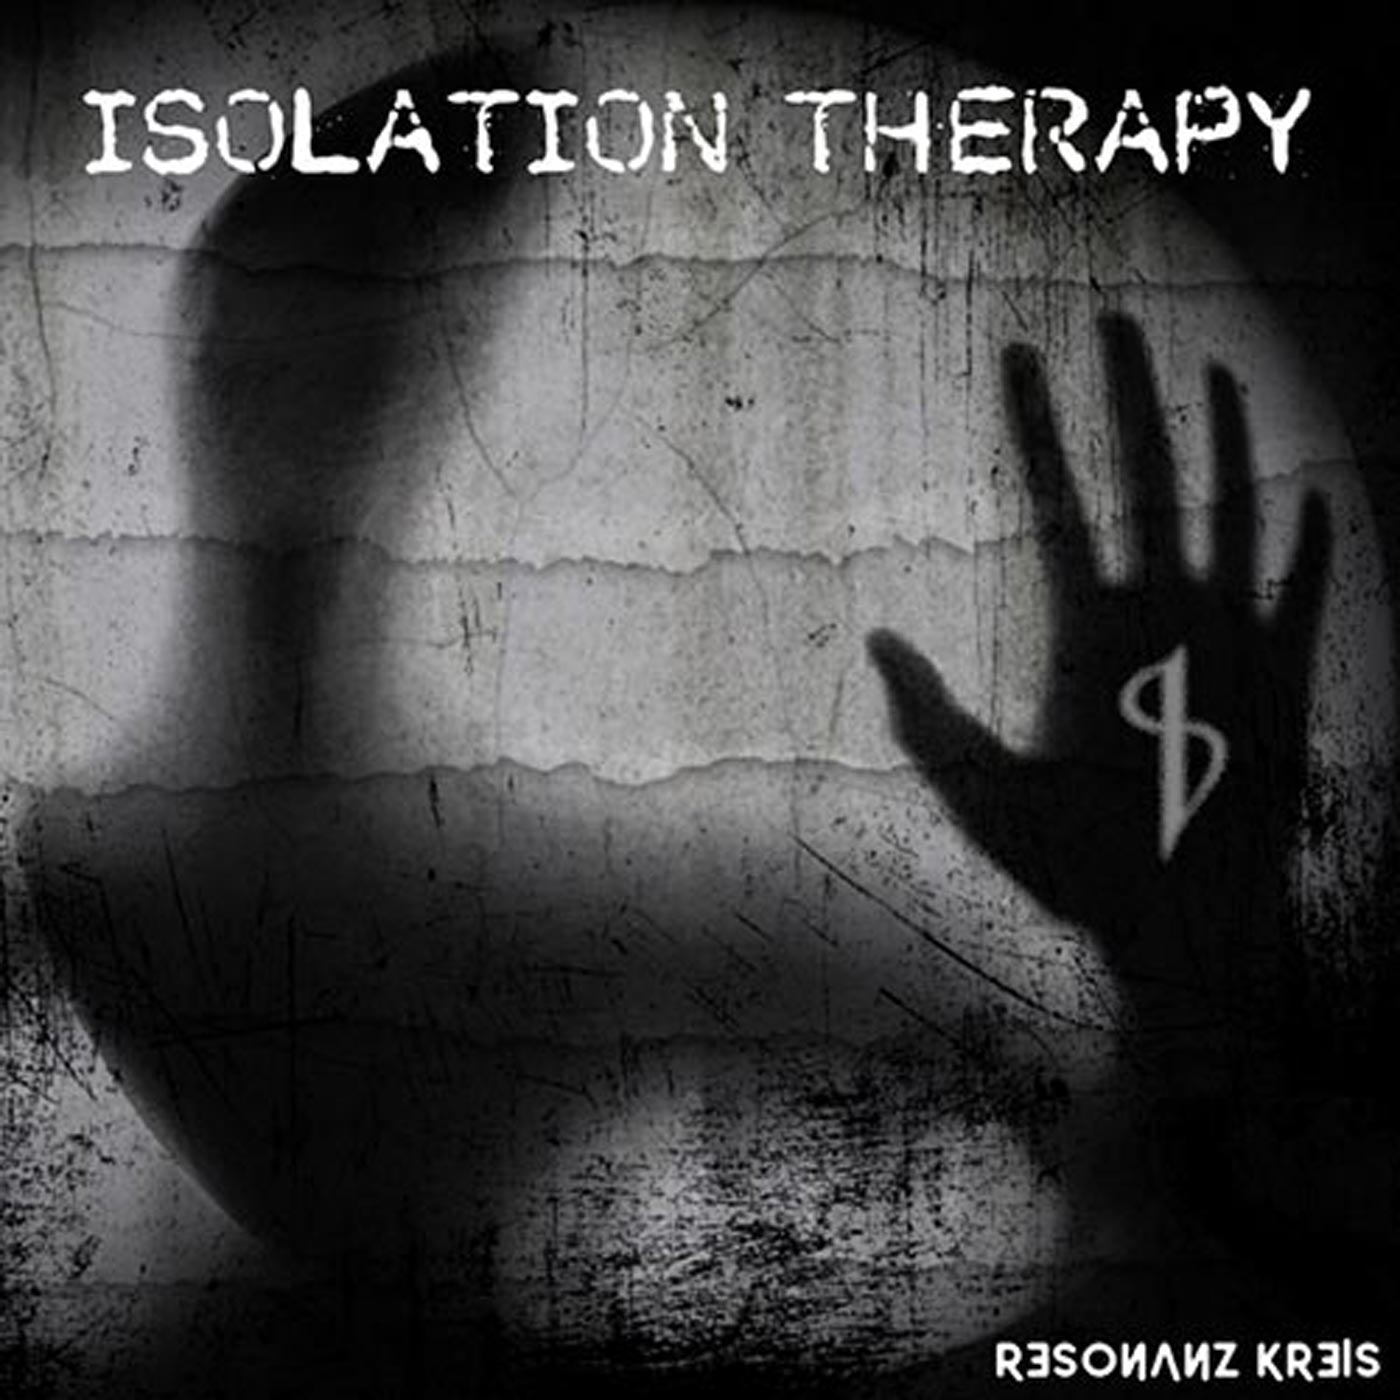 Resonanz Kreis – “Isolation Therapy”